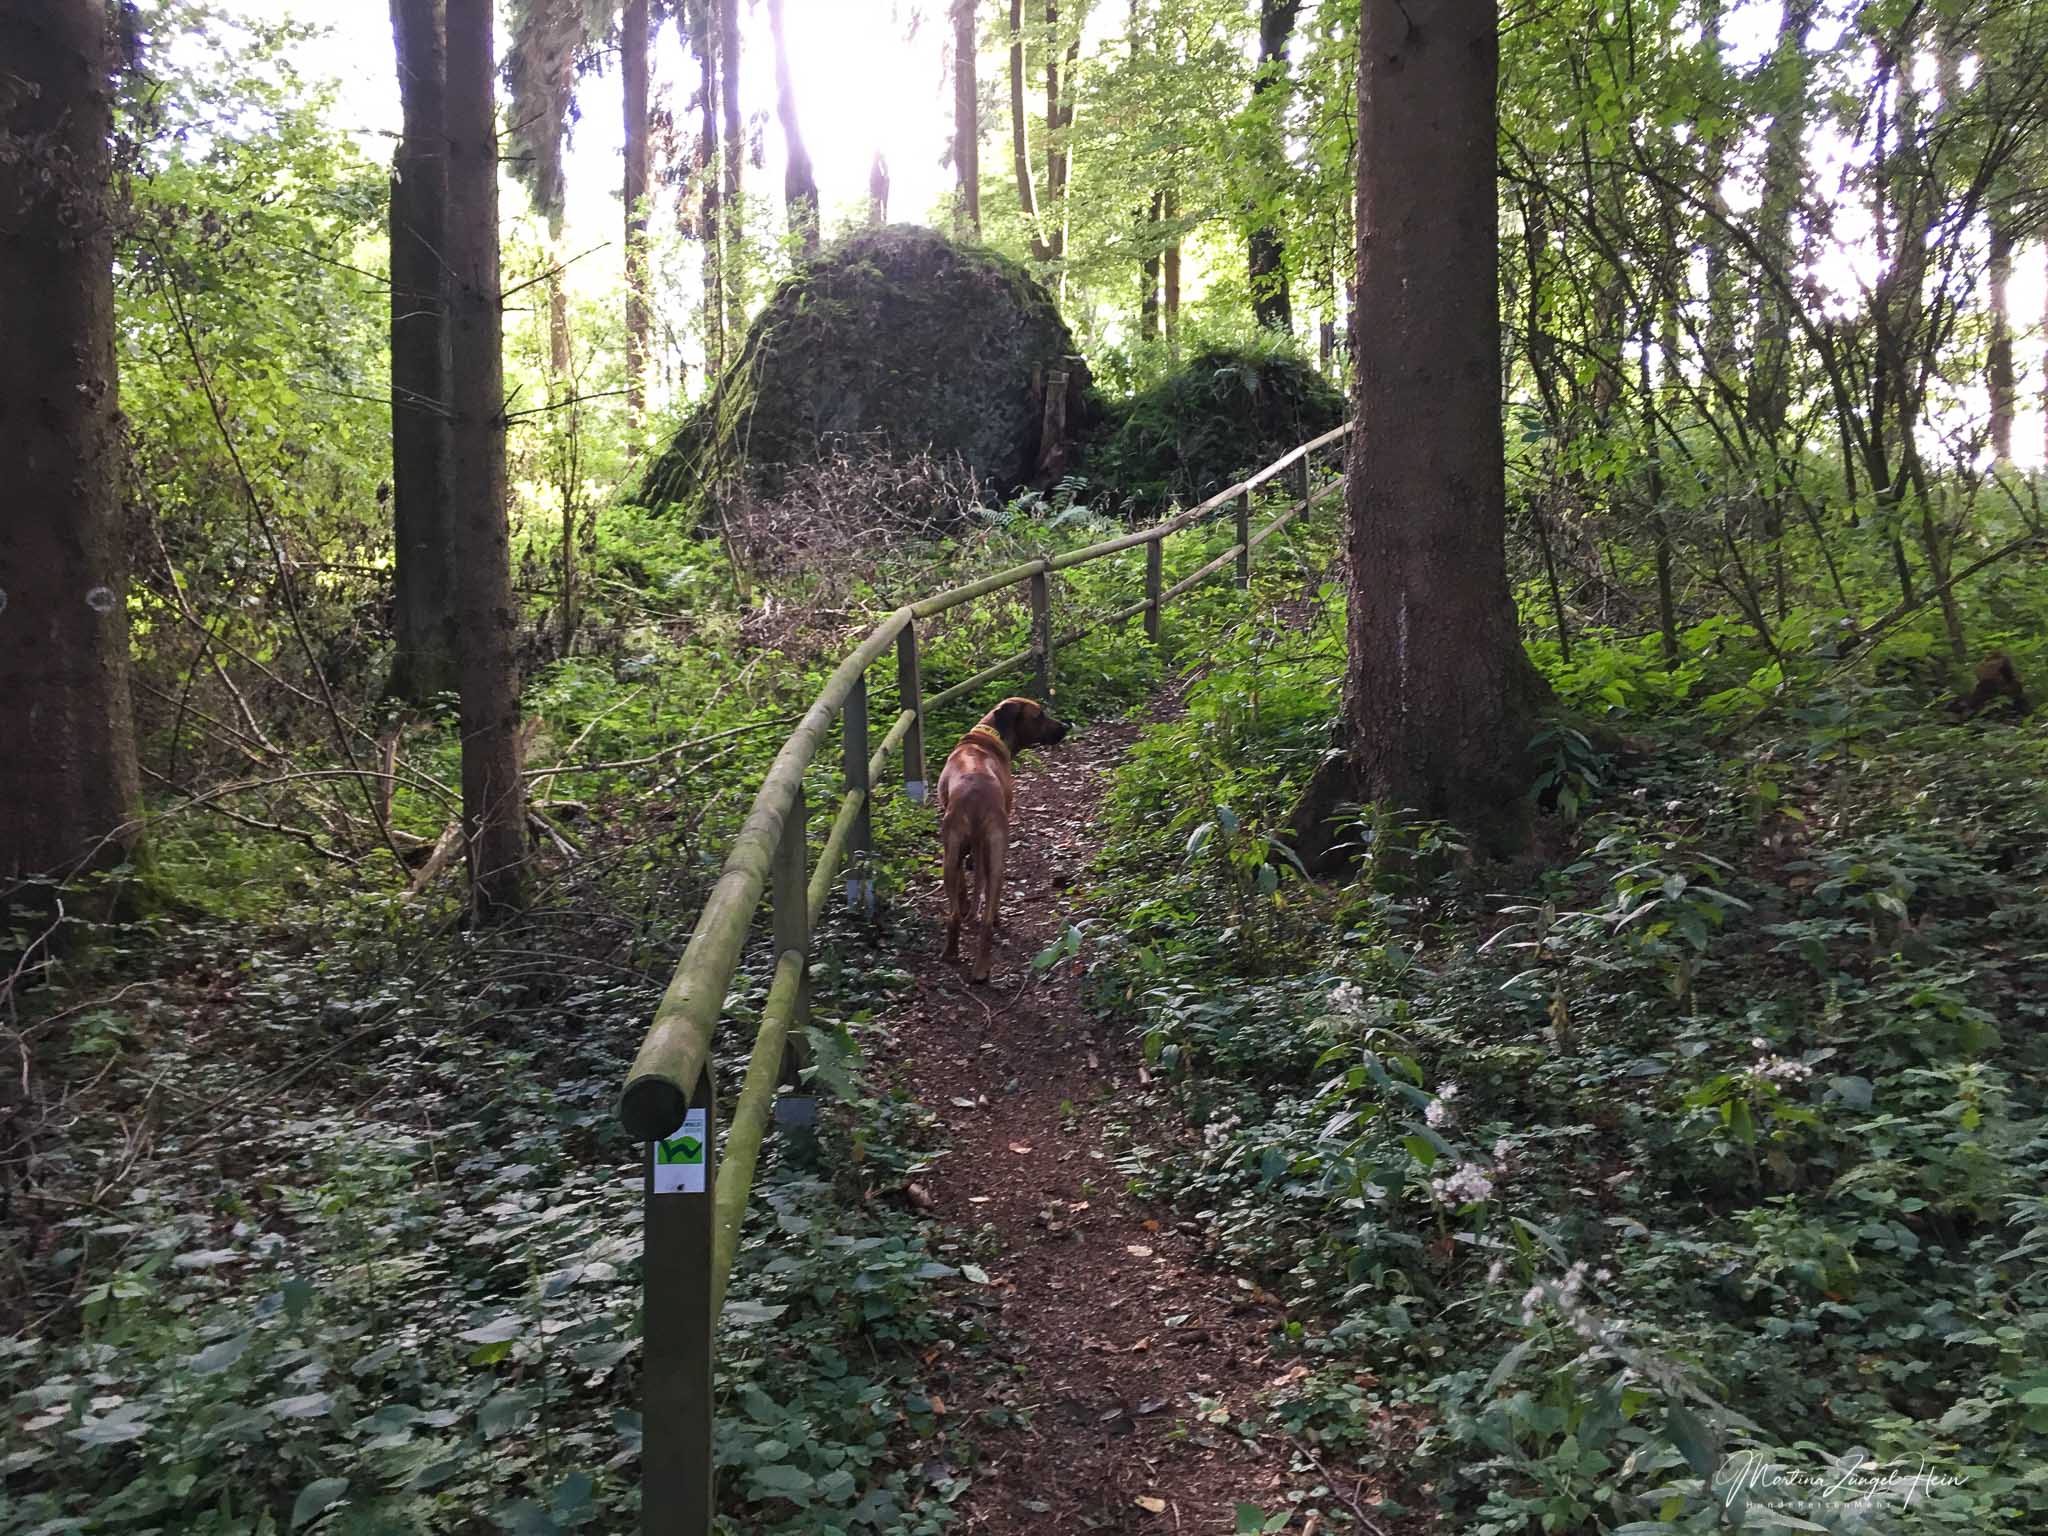 WesterwaldSteig Etappe 6 mit Hund